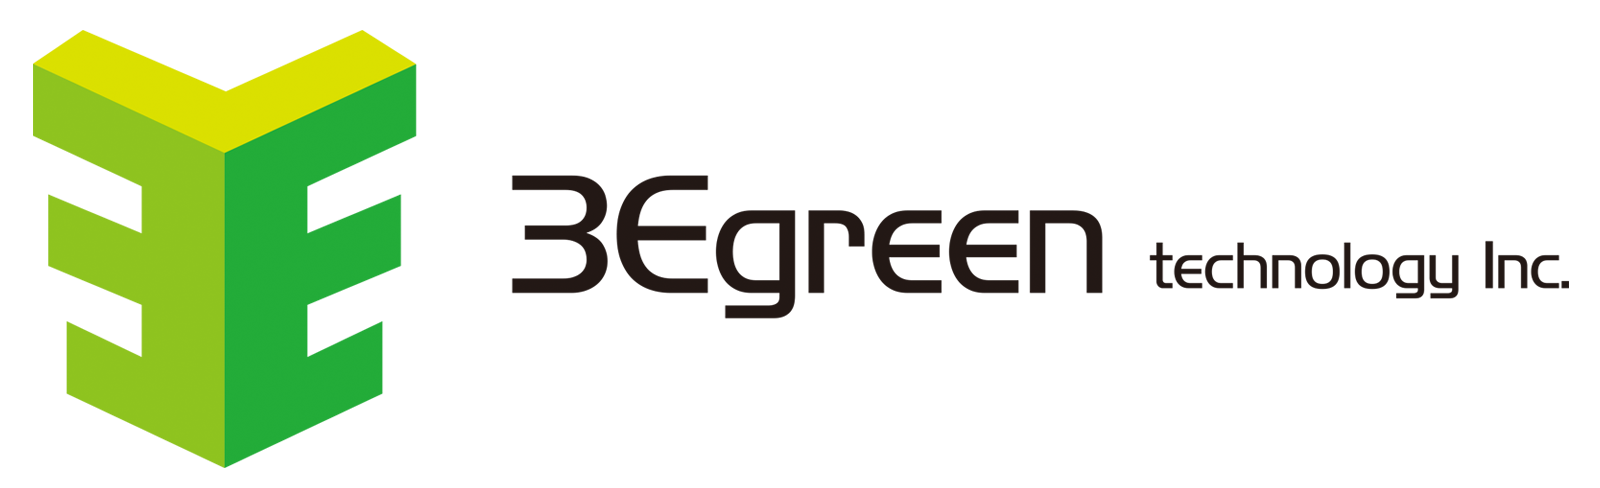 3Egreen Technology_logo